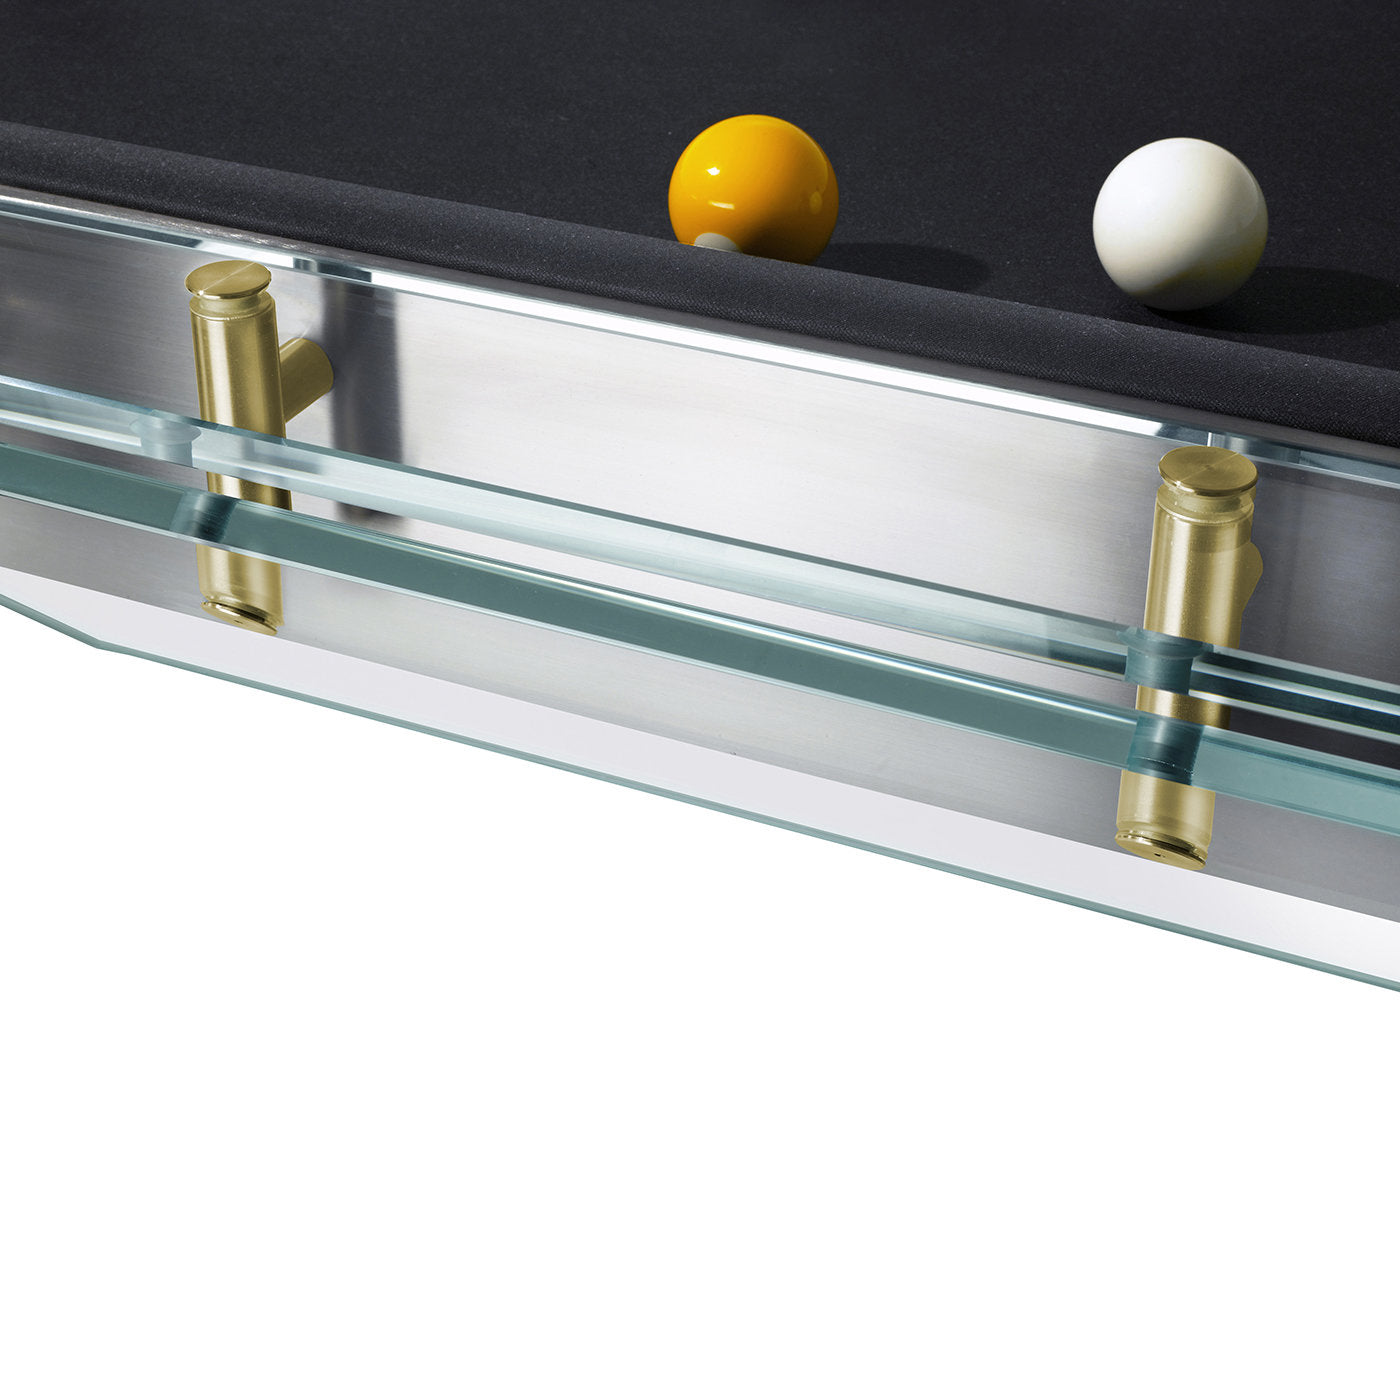 Filotto Billiard Table - Golden Edition - Alternative view 4